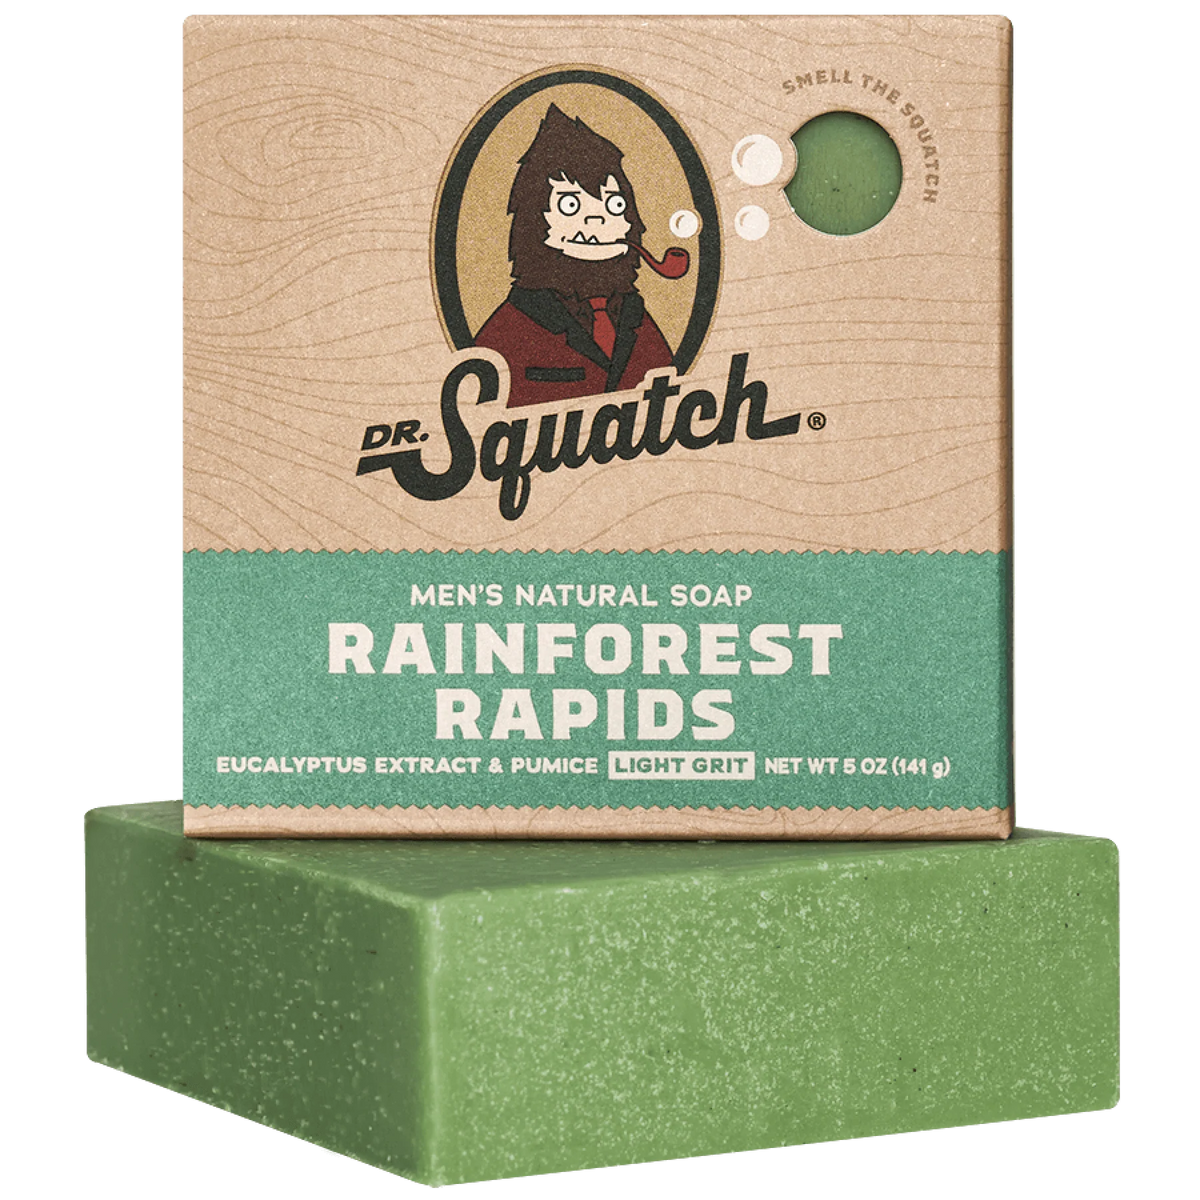 Men's Natural Soap - Rainforest Rapid